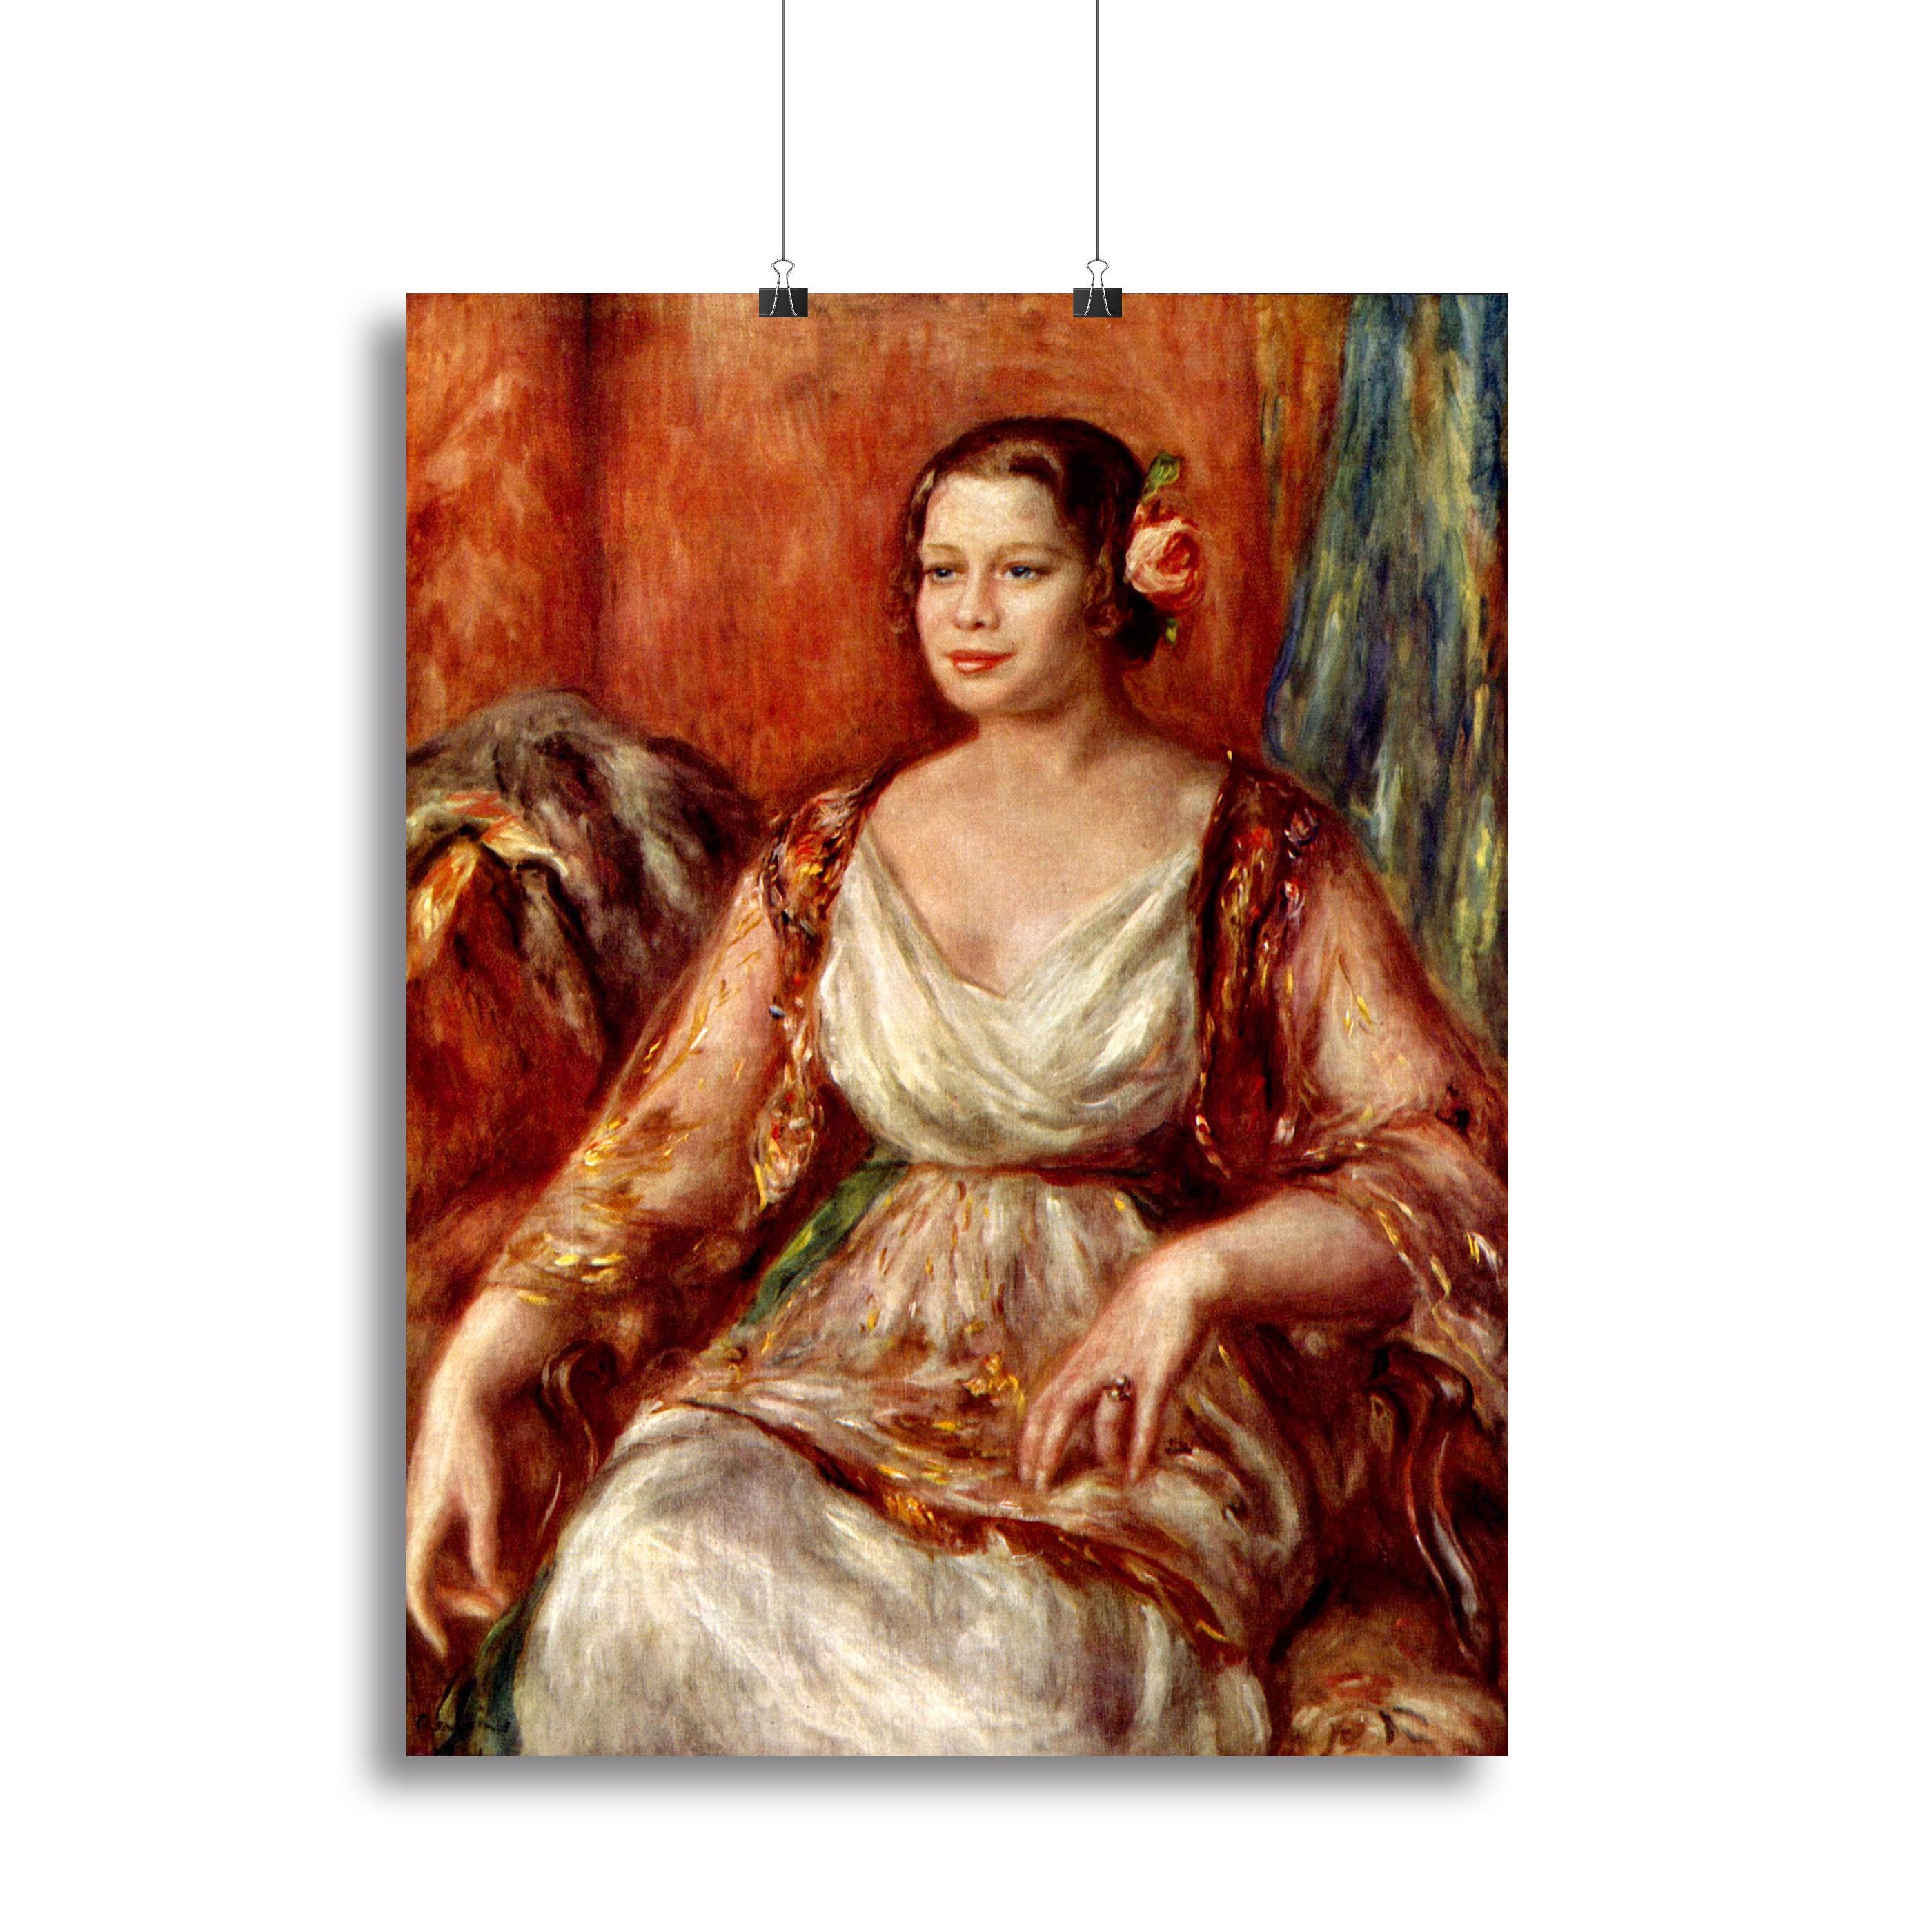 Portrait of Tilla Durieux by Renoir Canvas Print or Poster